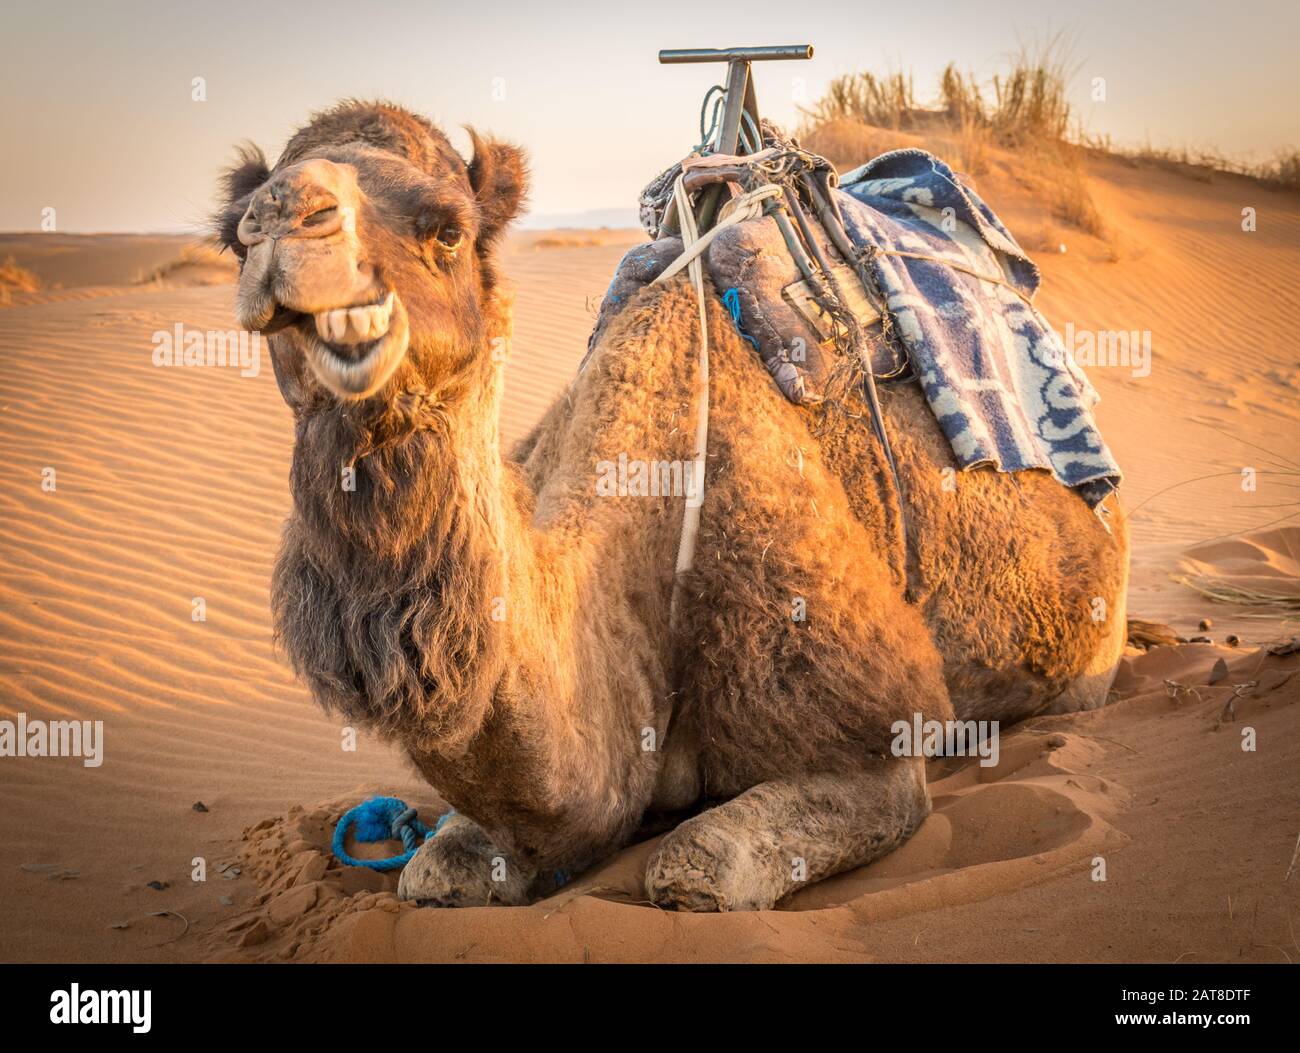 Funny Camel at the sahara, Merzouga, Morocco Stock Photo